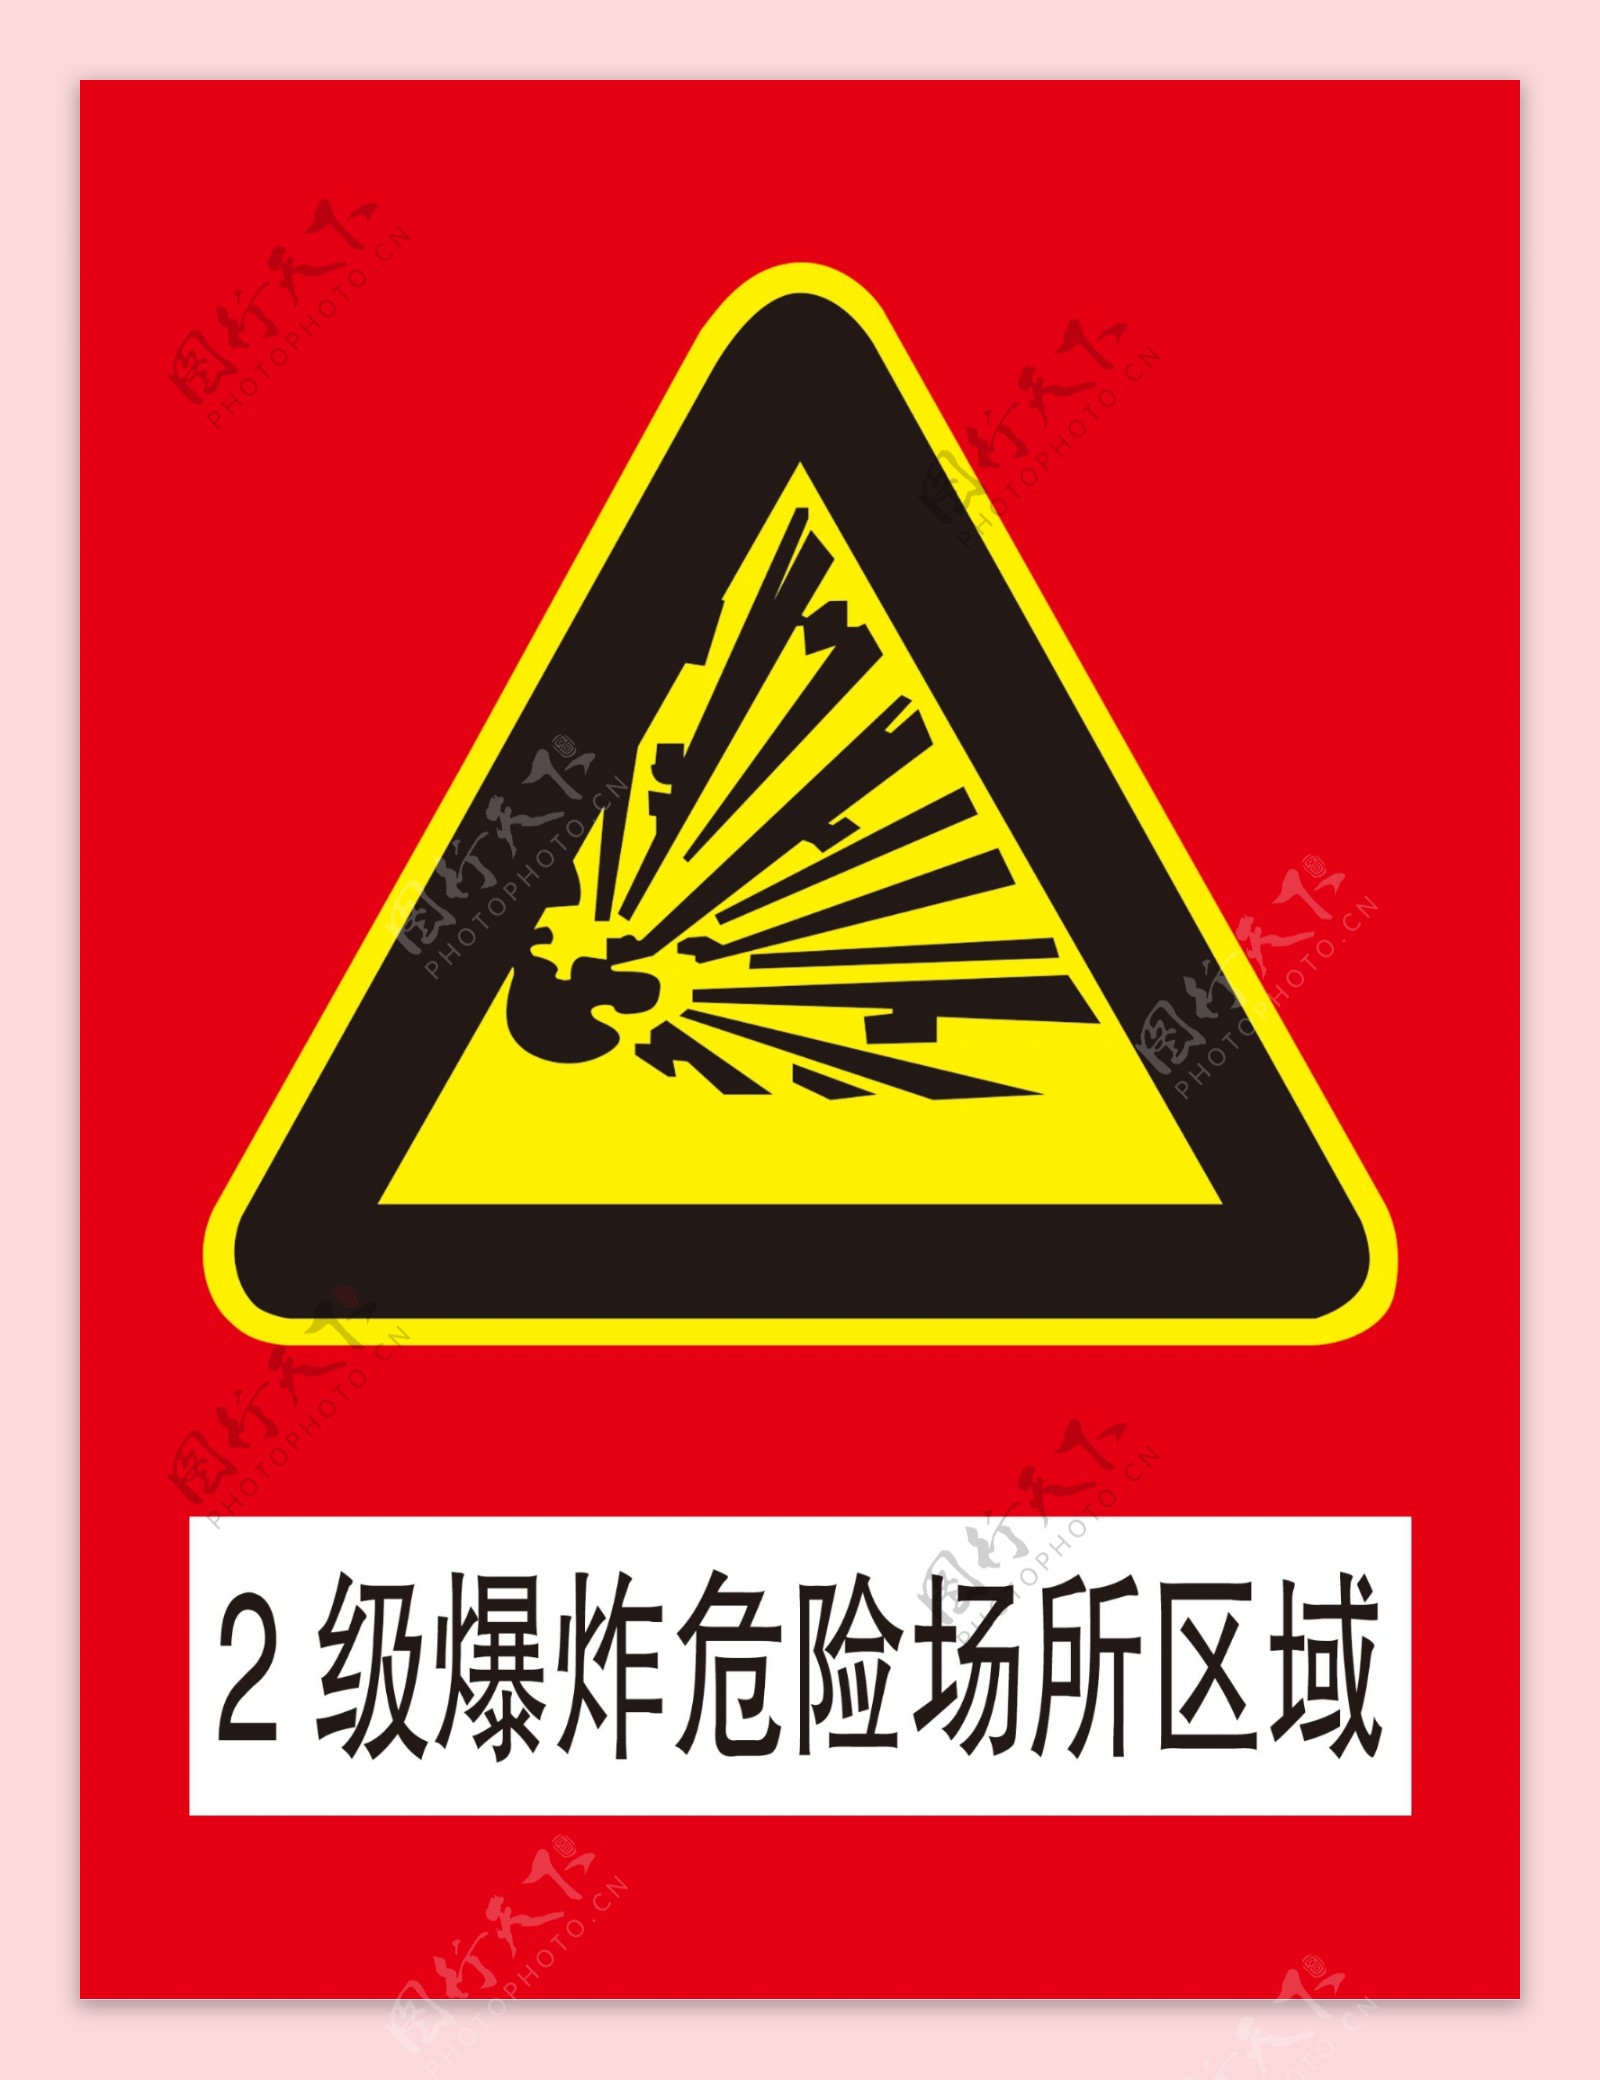 2级爆炸危险场所区域警告标志